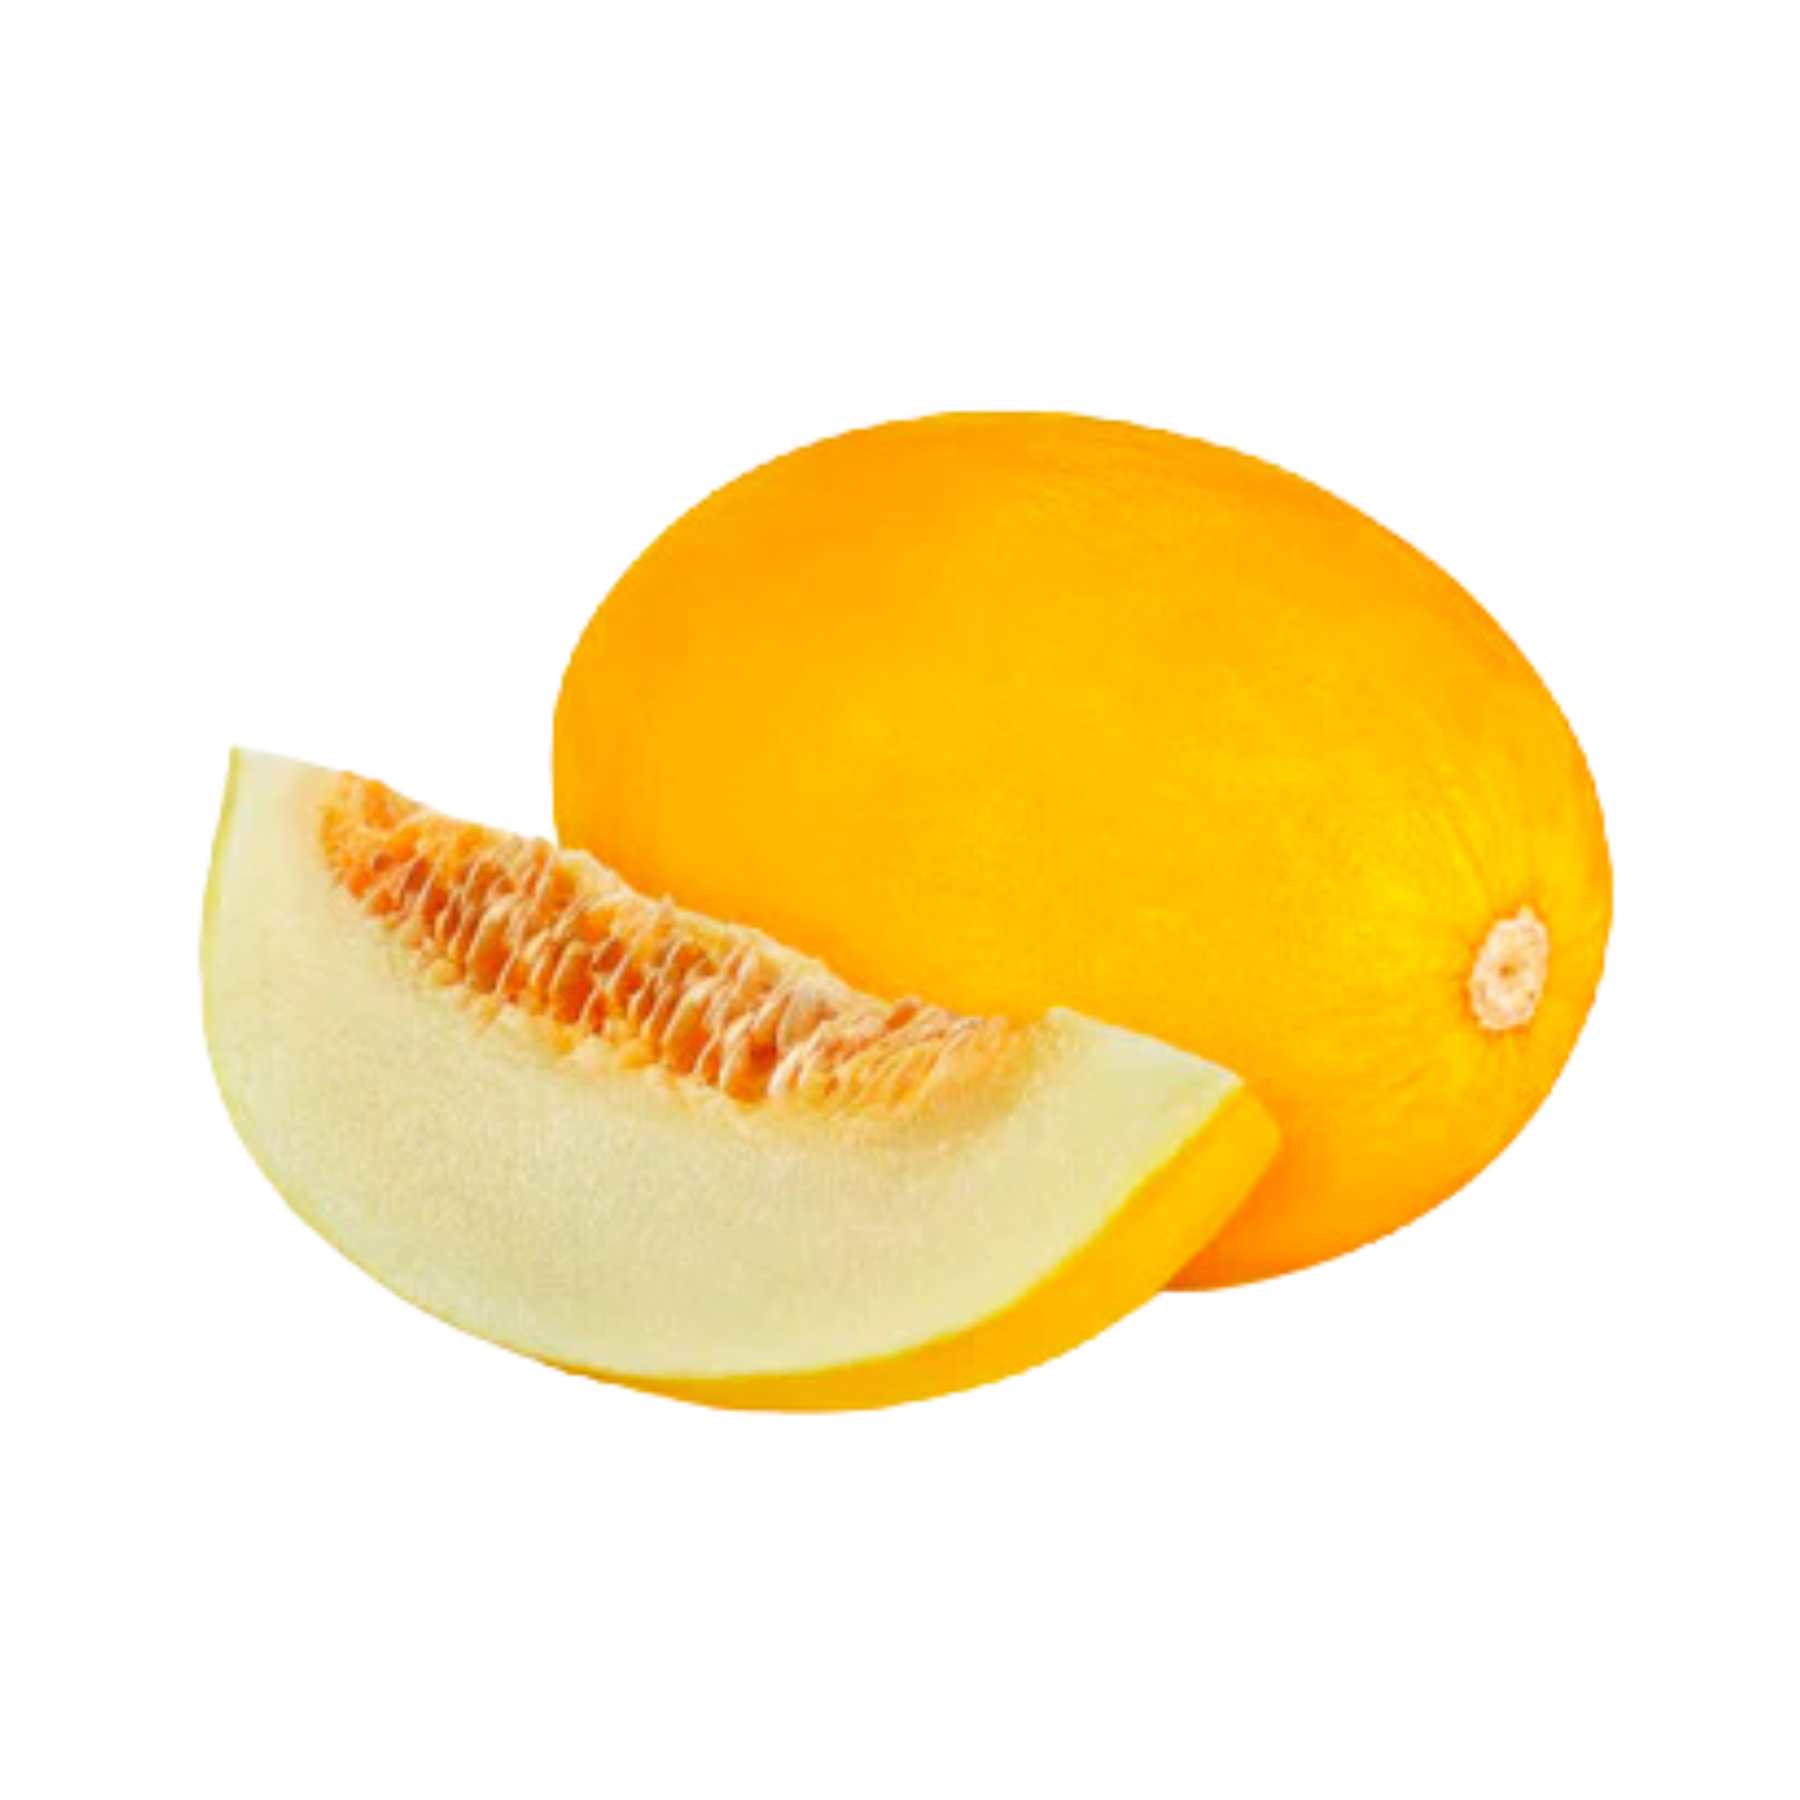 Canary Melon